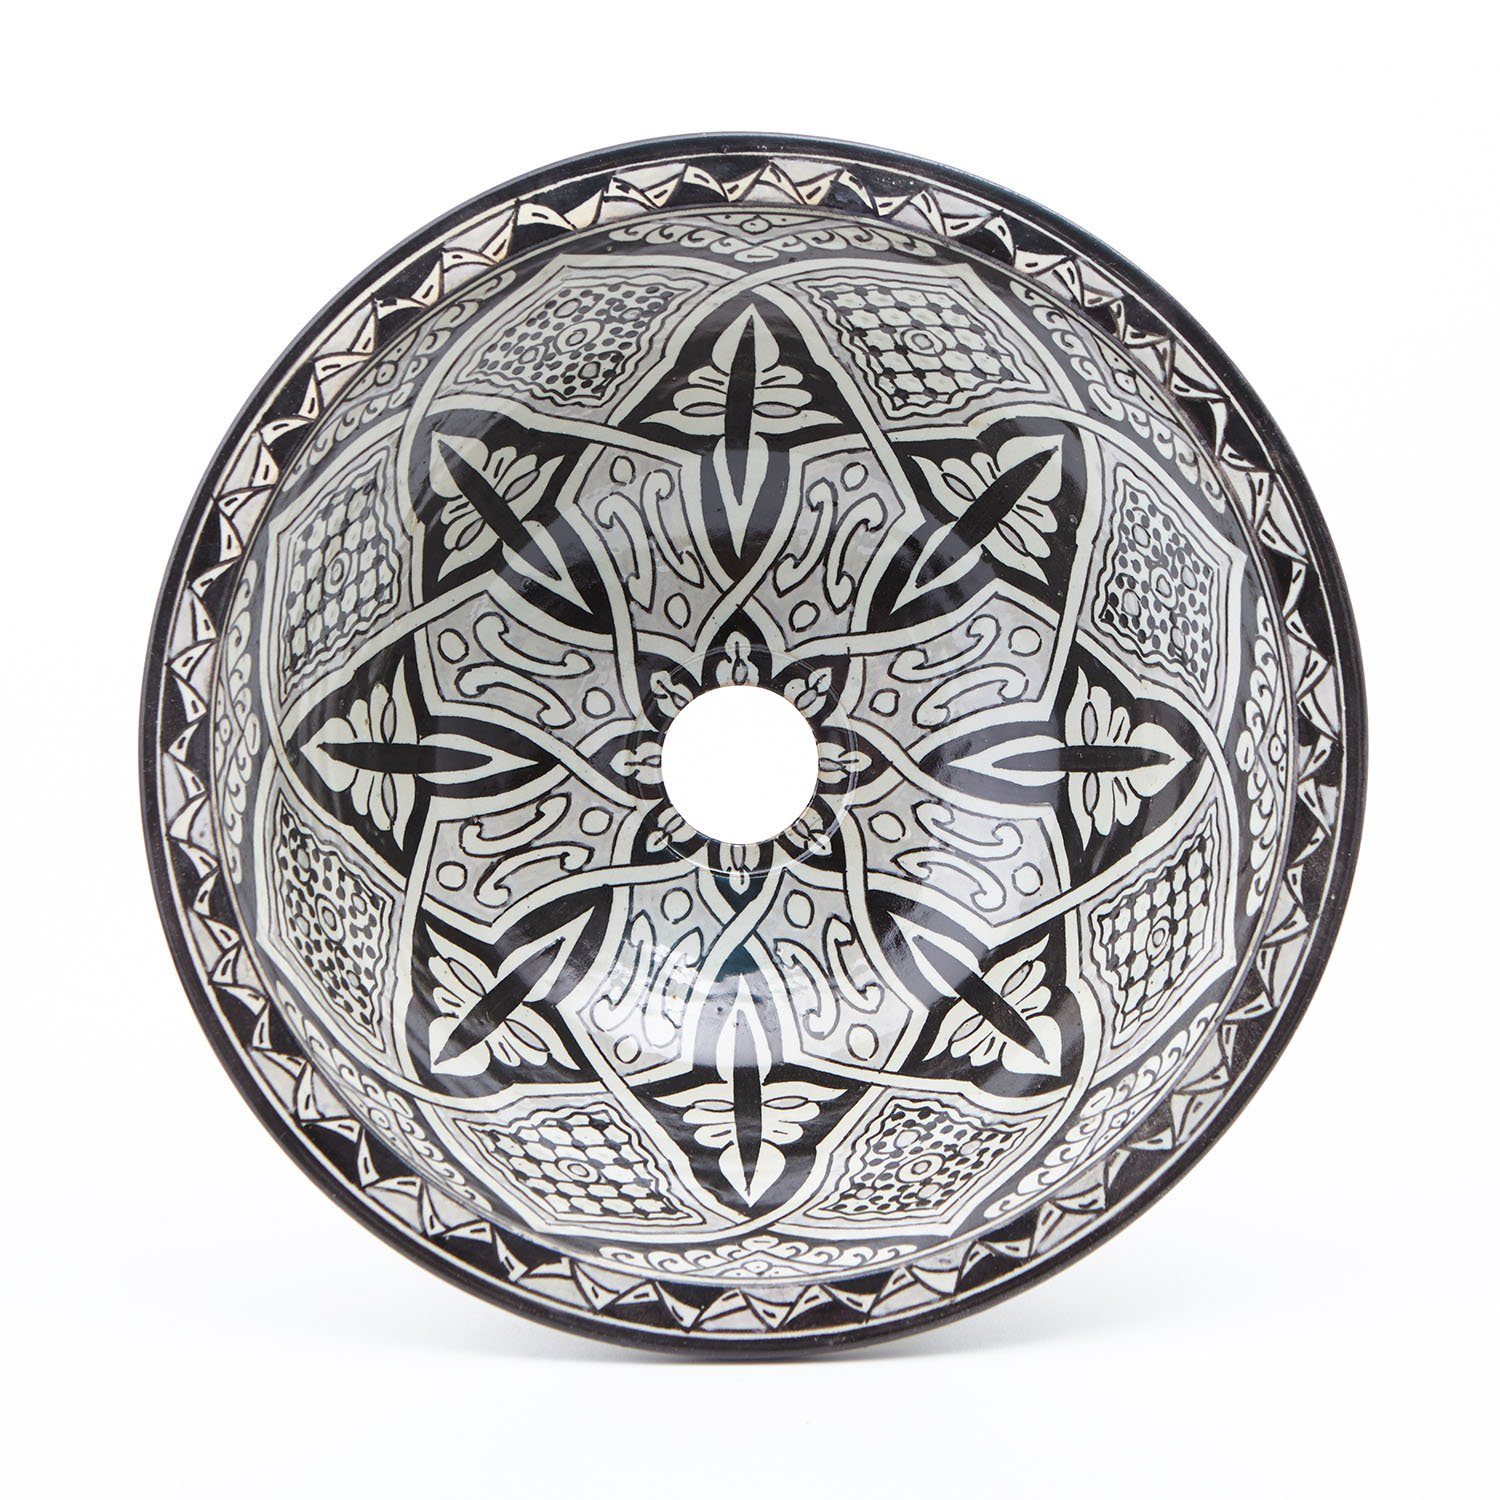 Casa Moro Waschbecken Orientalisches Keramik-Waschbecken Fes76 Ø 35cm in schwarz grau weiß (Kunsthandwerk aus Marokko), Handwaschbecken rund, WB35276